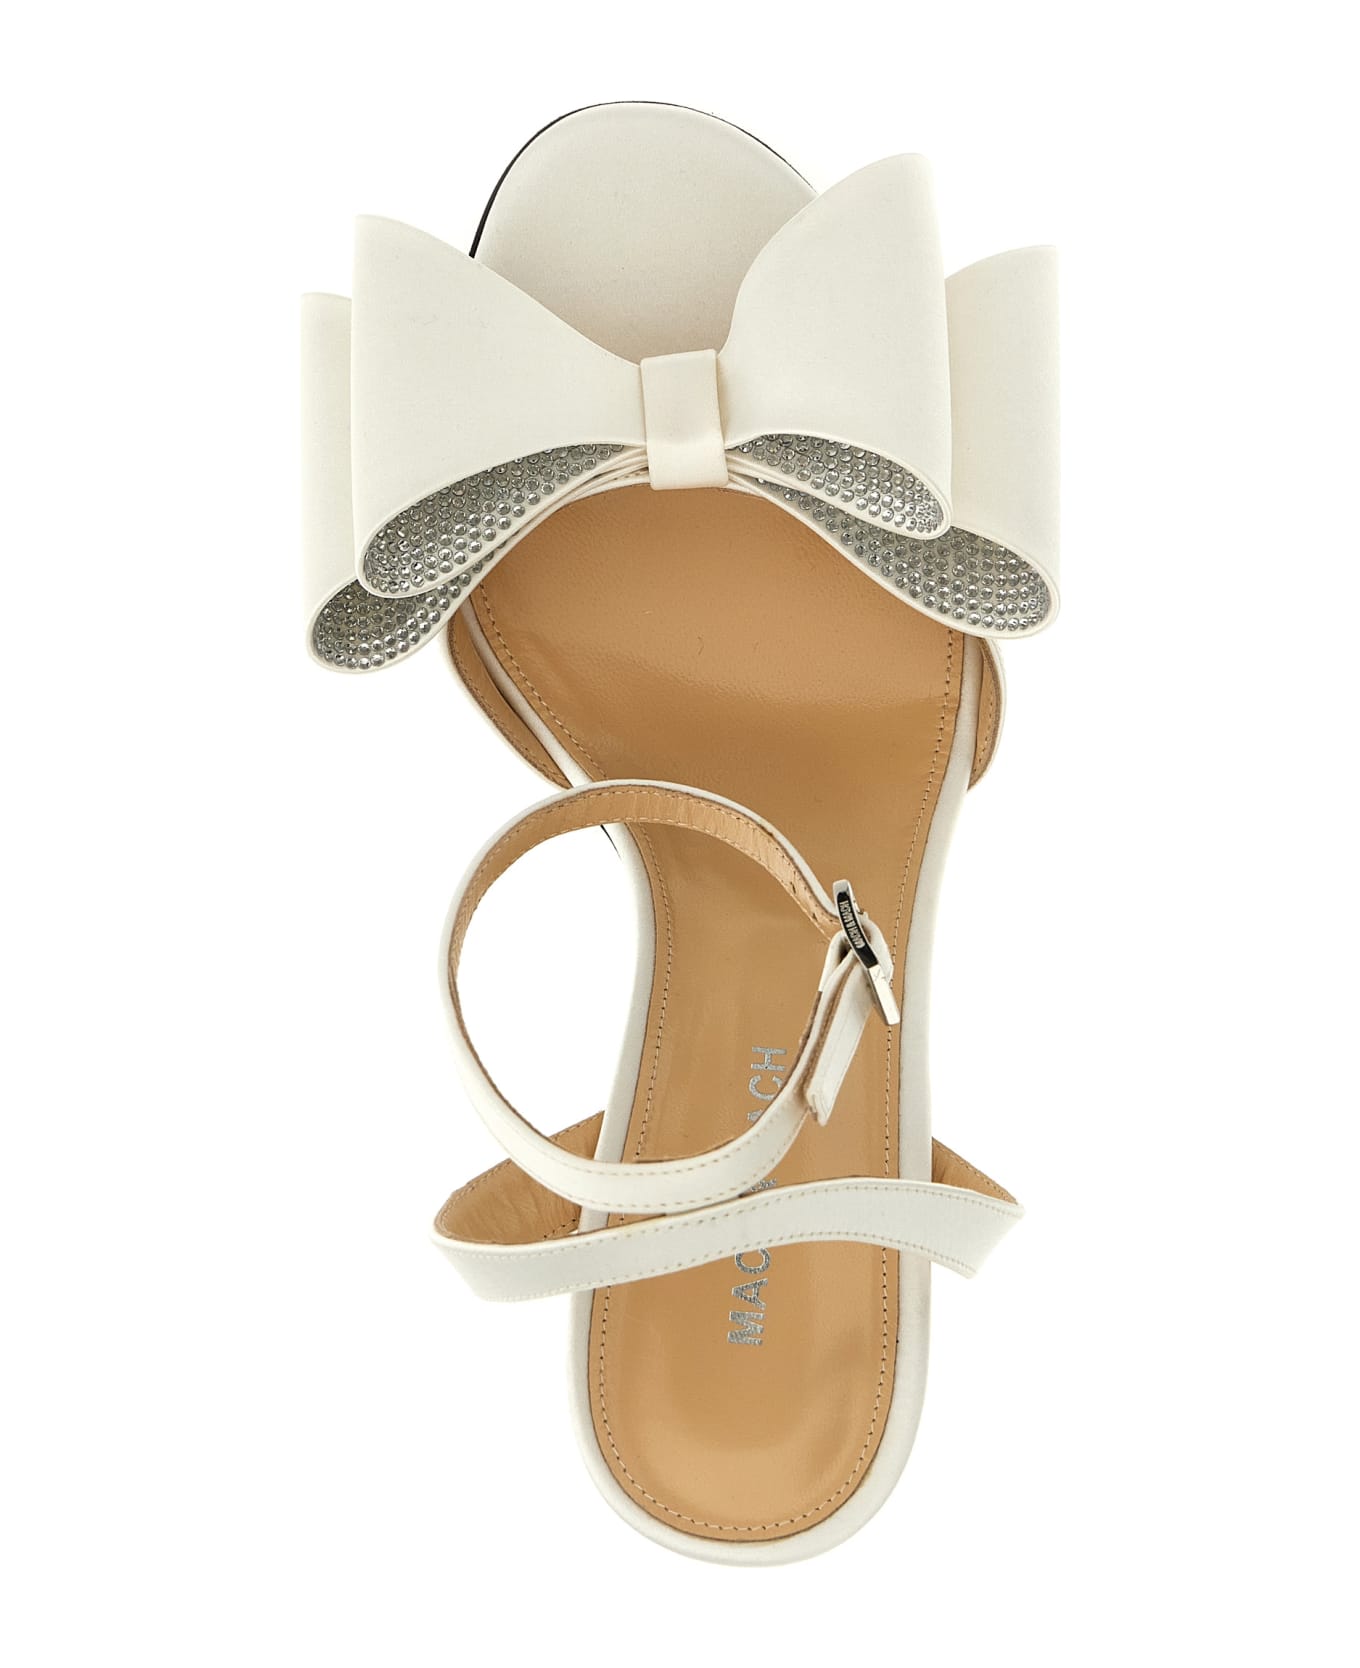 Mach & Mach 'le Cadeau' Sandals - White サンダル